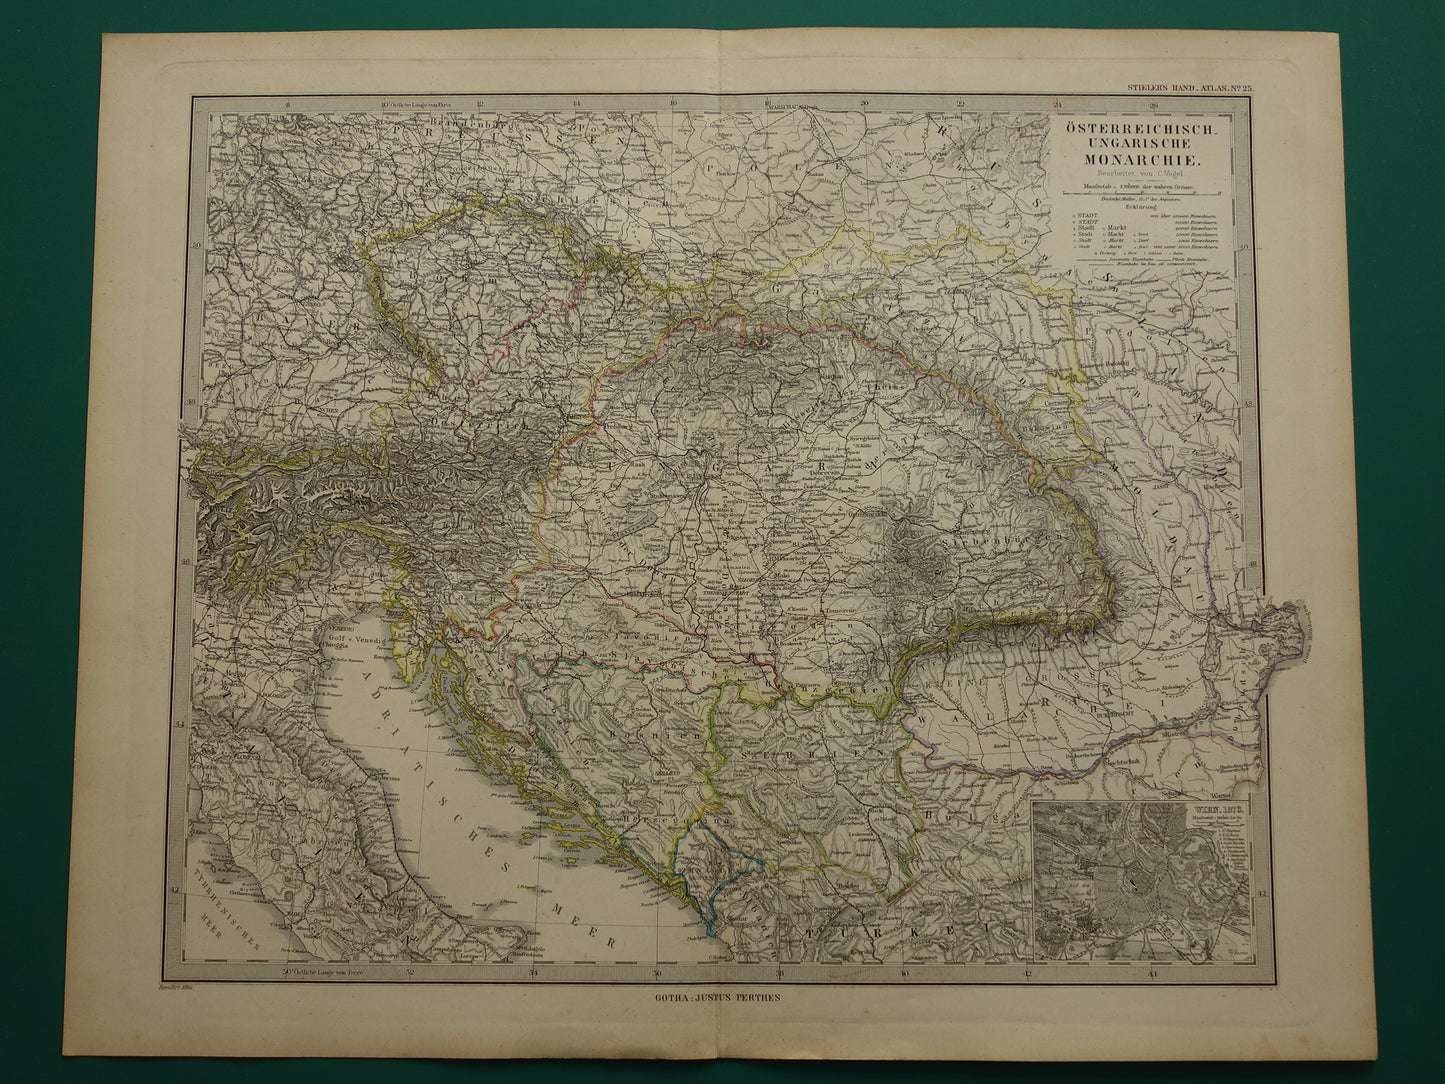 Oude kaart van Oostenrijk Hongarije uit het jaar 1879 gedetailleerde antieke landkaart met jaartal historische kaarten Oostenrijk-Hongarije